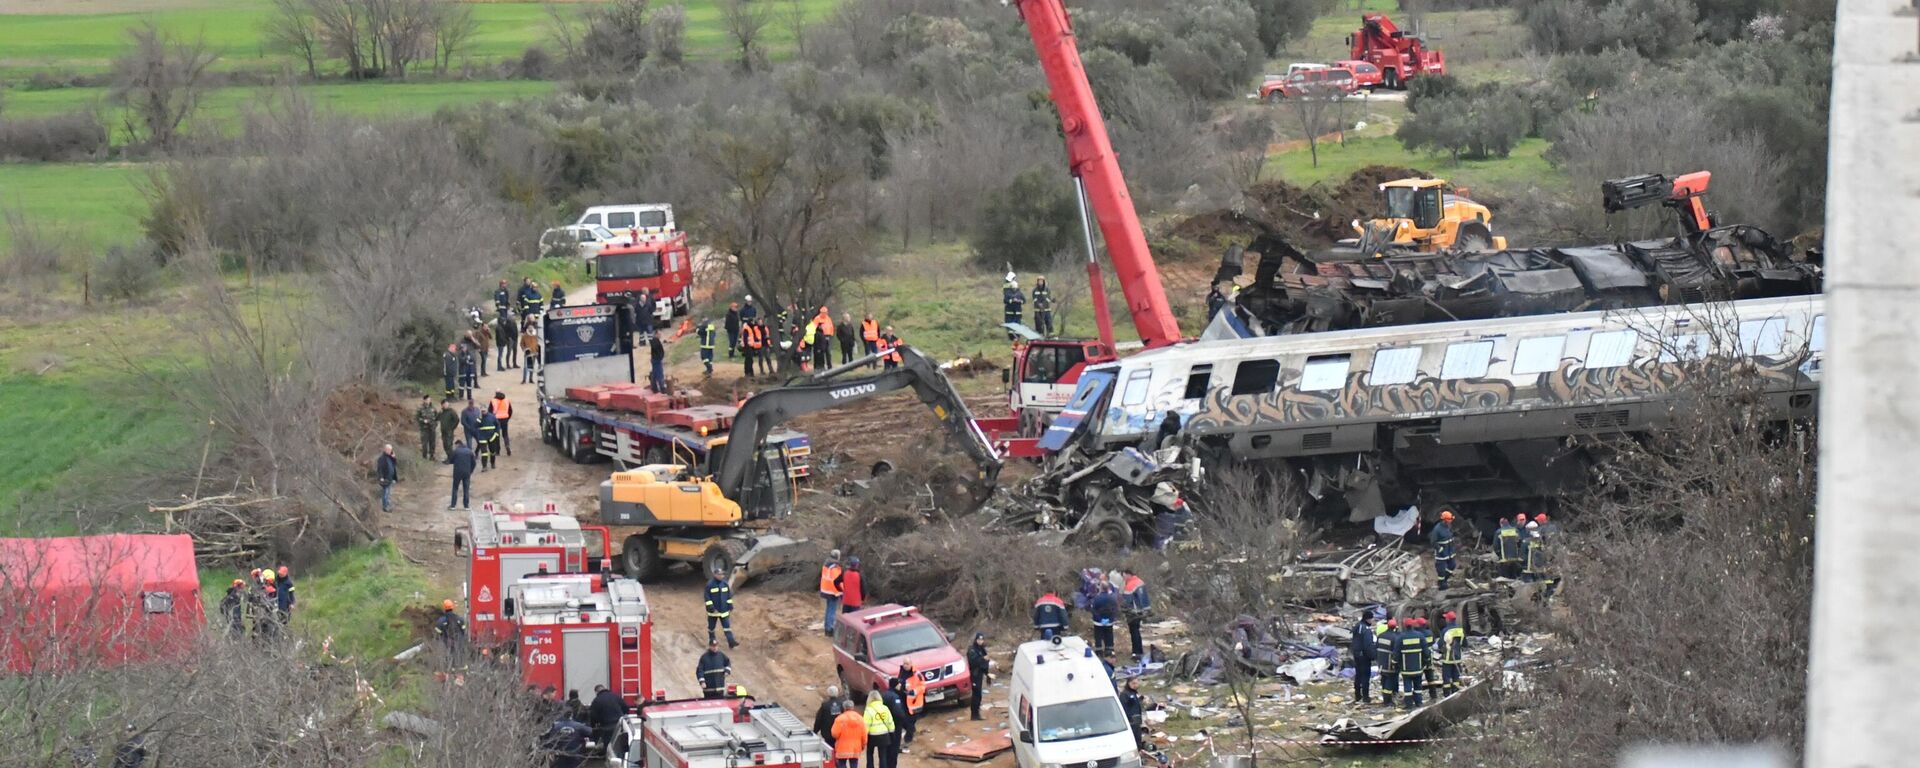 Yunanistan'da meydana gelen tren kazasında 32 kişinin yaşamını yitirdiği, 85 kişinin yaralandığı bildirildi. Yunan Devlet Televizyonu ERT’in haberine göre, Larisa kentinin kuzeyindeki Tempi bölgesinde yolcu treni ile yük treni çarpıştı. Kaza alanında arama kurtarma çalışmaları devam ediyor. - Sputnik Türkiye, 1920, 16.05.2023